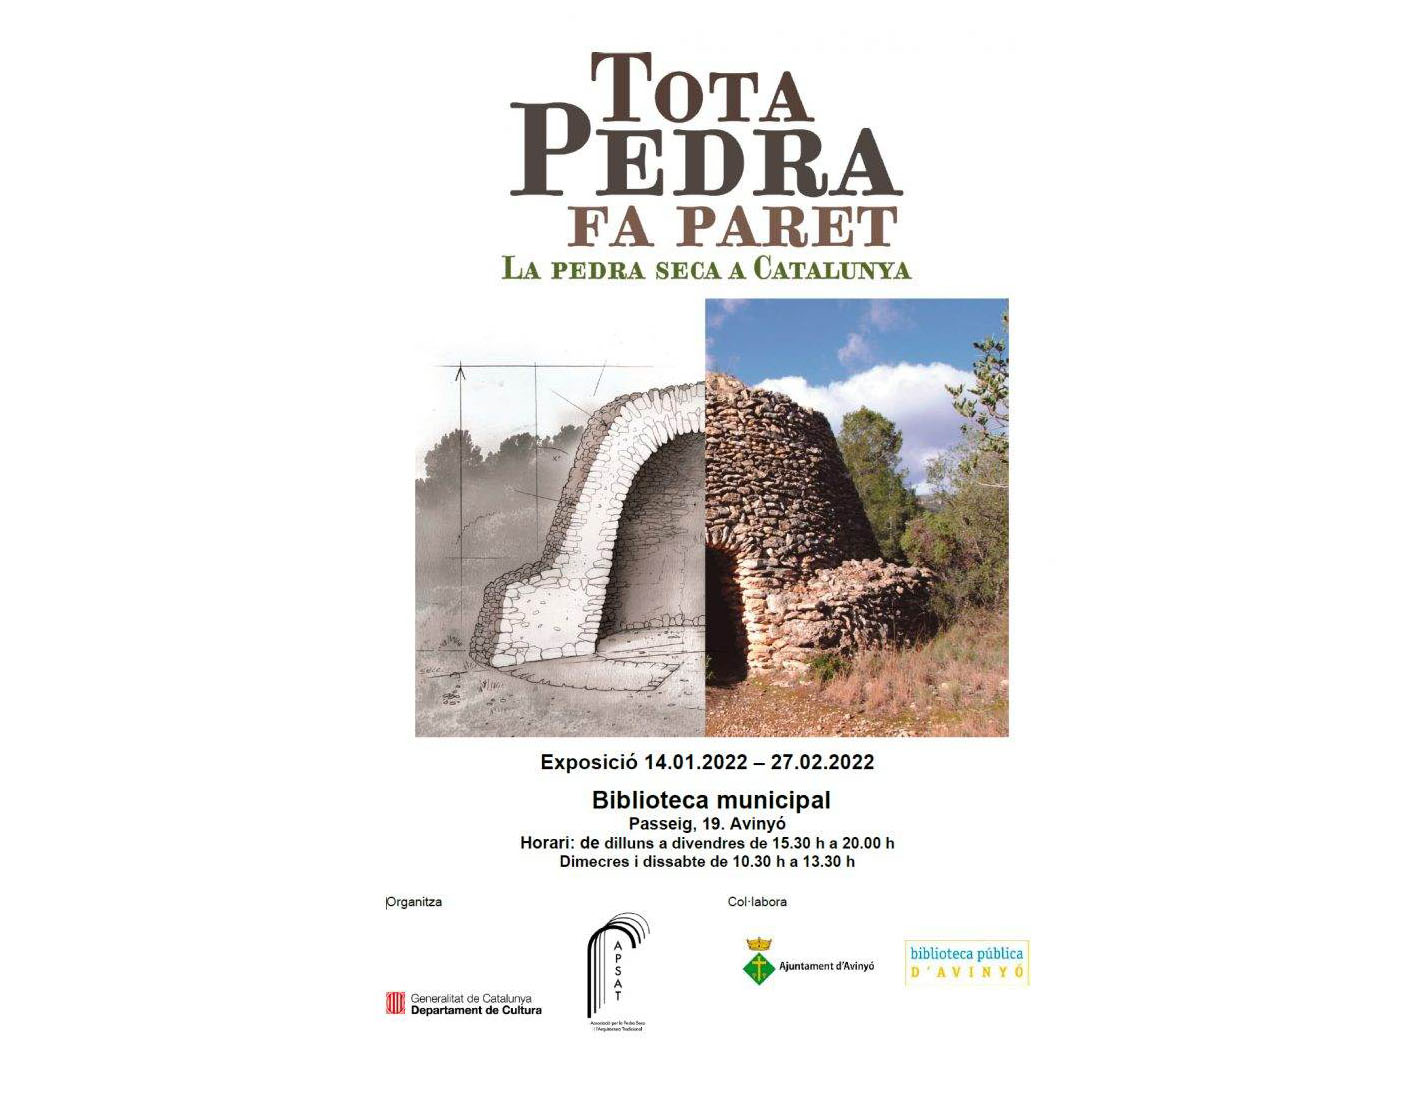 L'exposició "Tota pedra fa paret. La pedra seca a Catalunya" a Avinyó